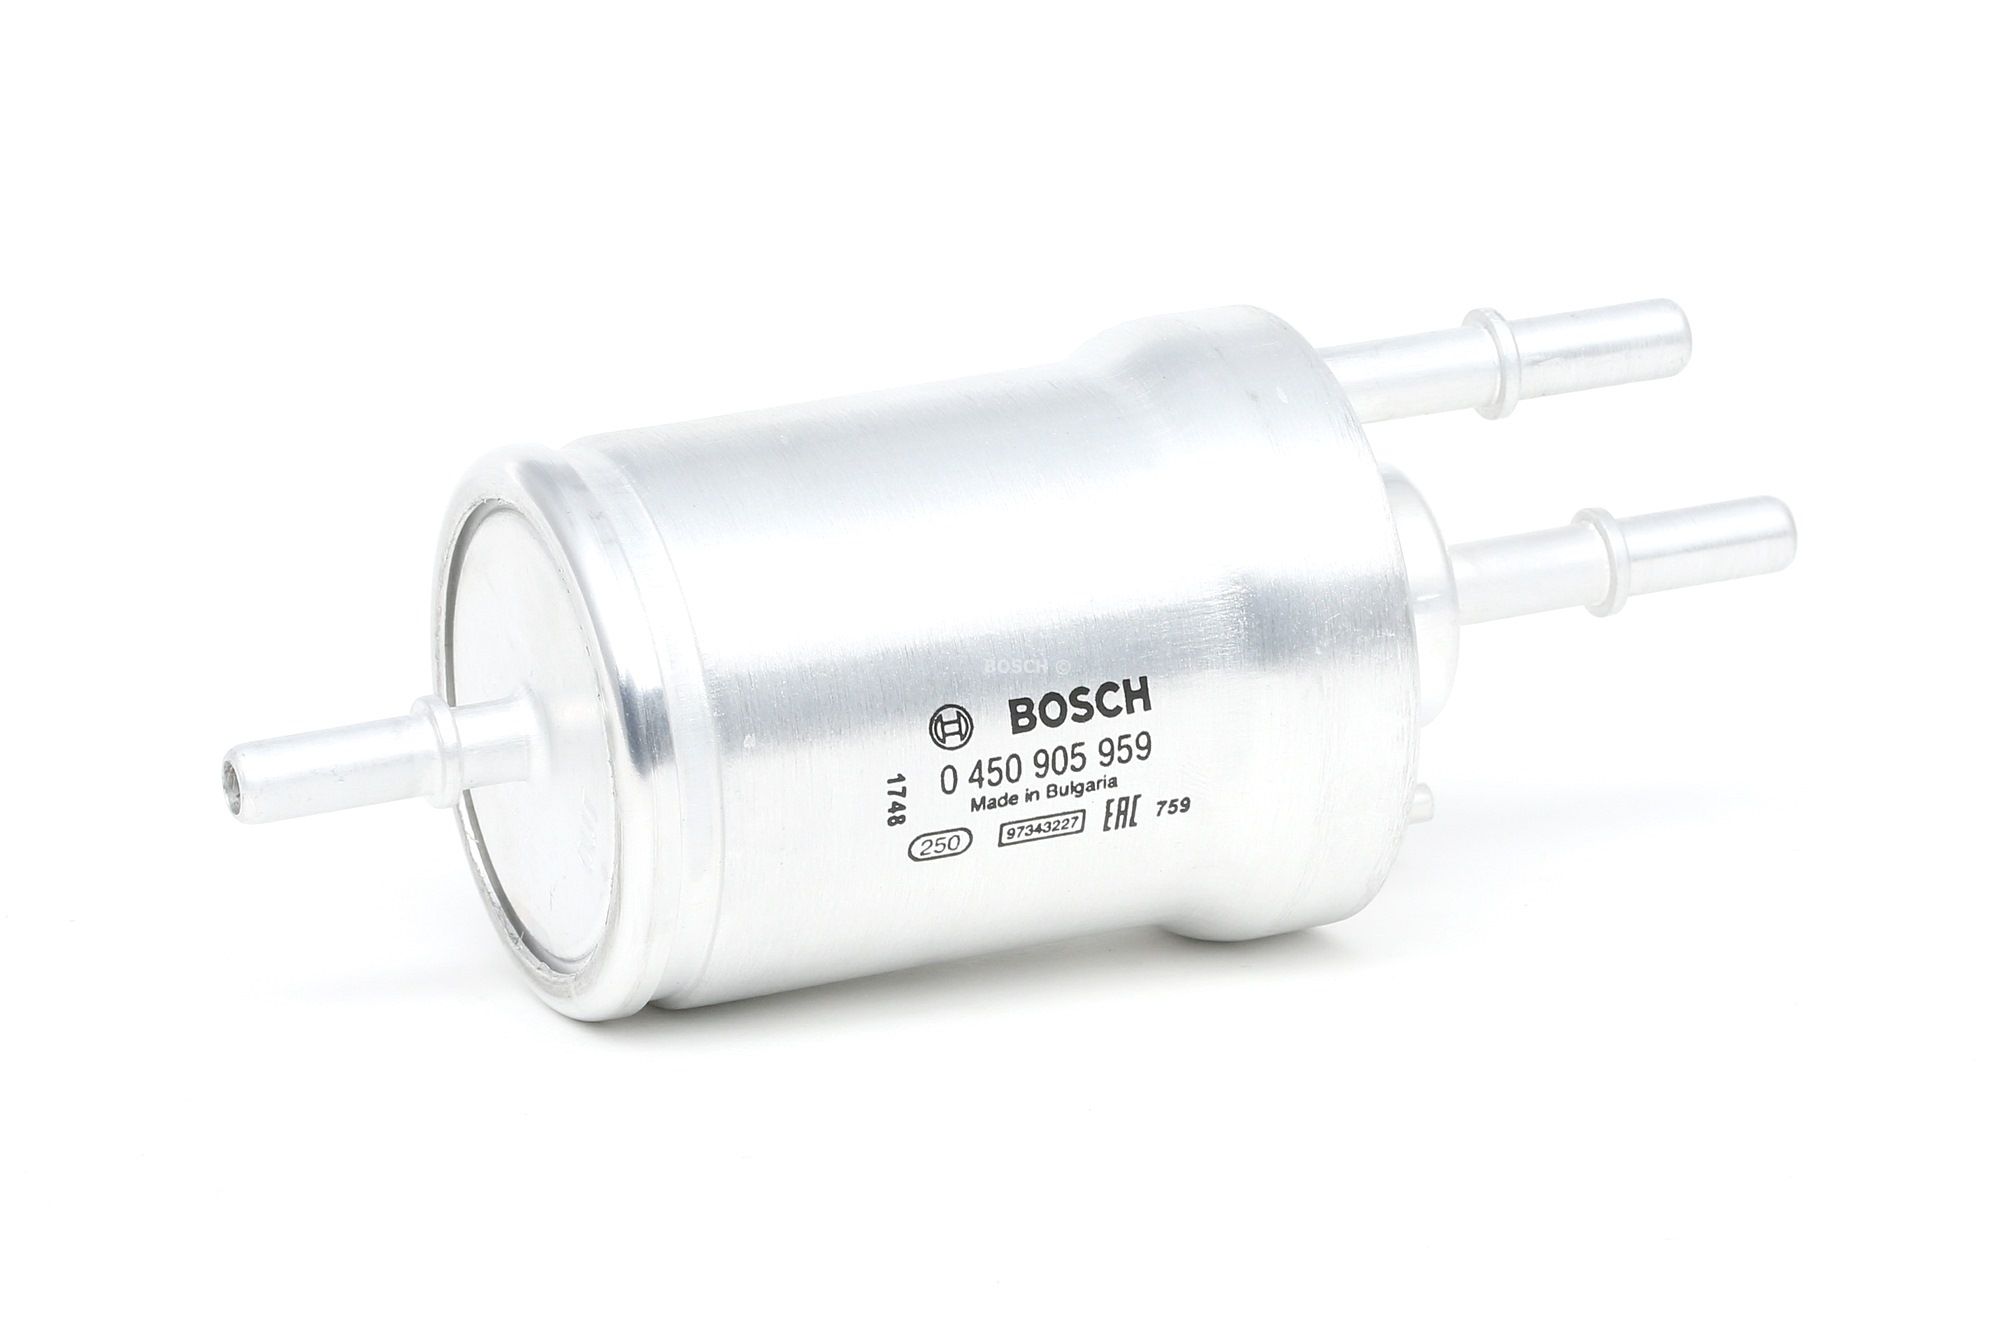 BOSCH 0 450 905 959 Palivový filtr Filtr zabudovaný do potrubí Škoda SUPERB 2016 v originální kvalitě